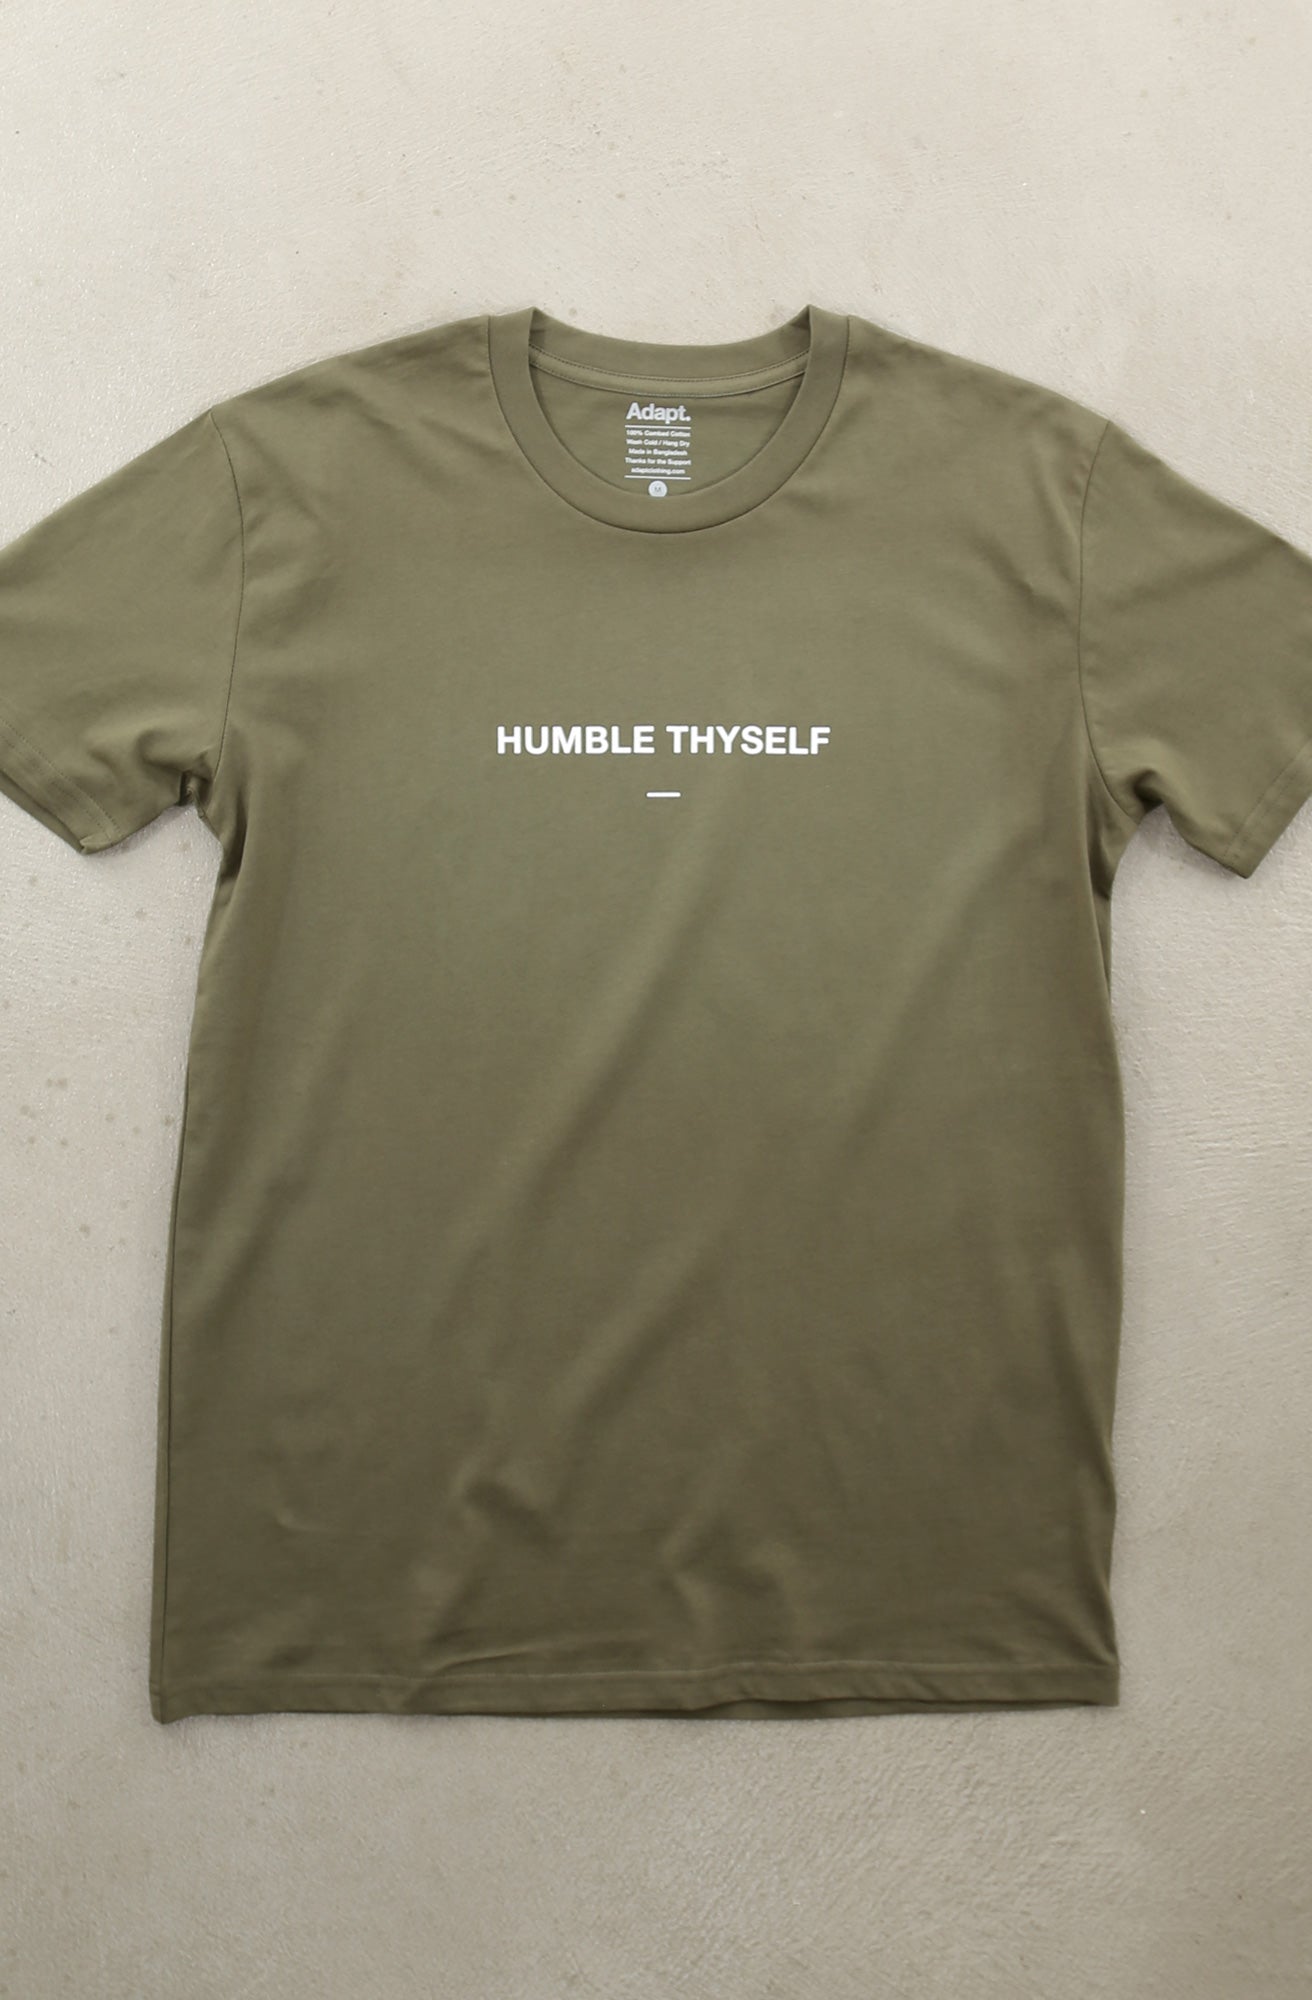 Humble Thyself II (Men's Army A1 Tee)